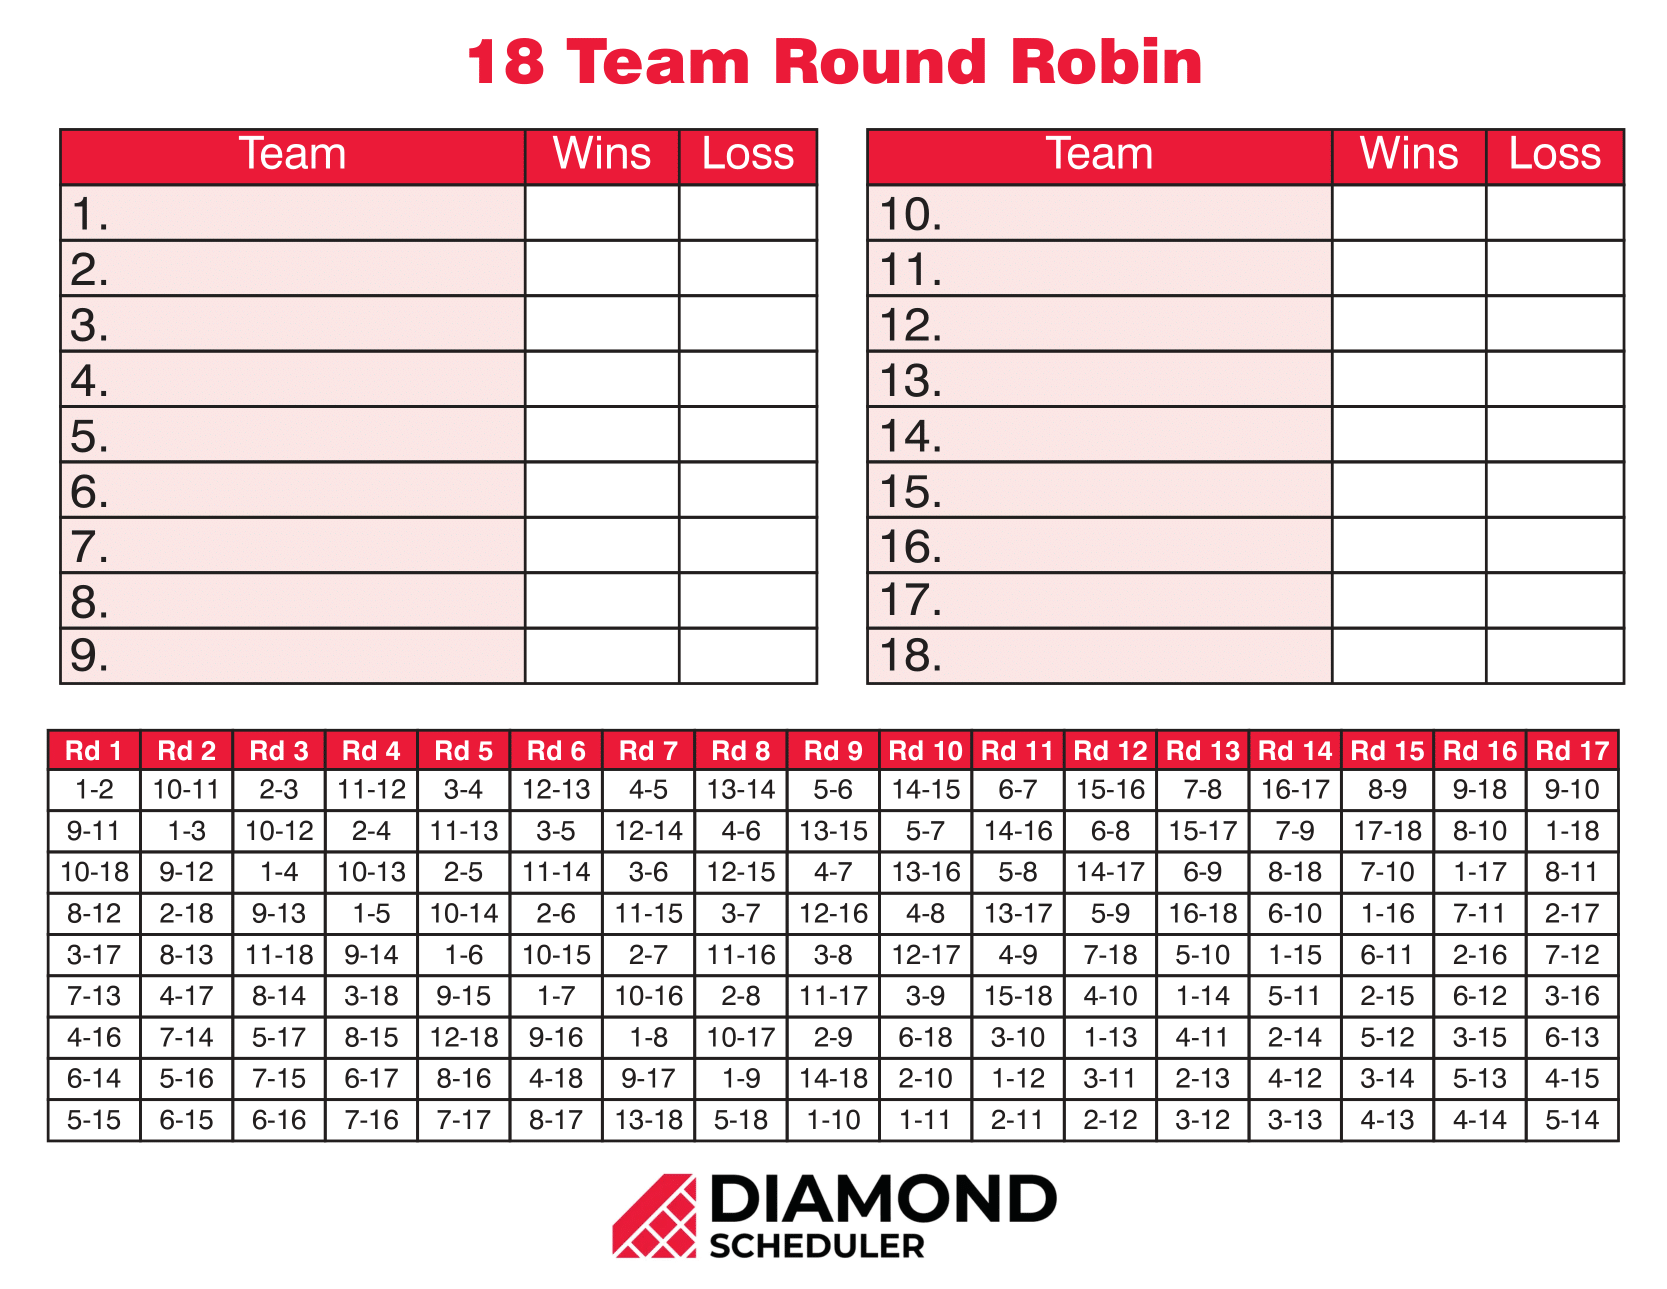 Team: Round 12